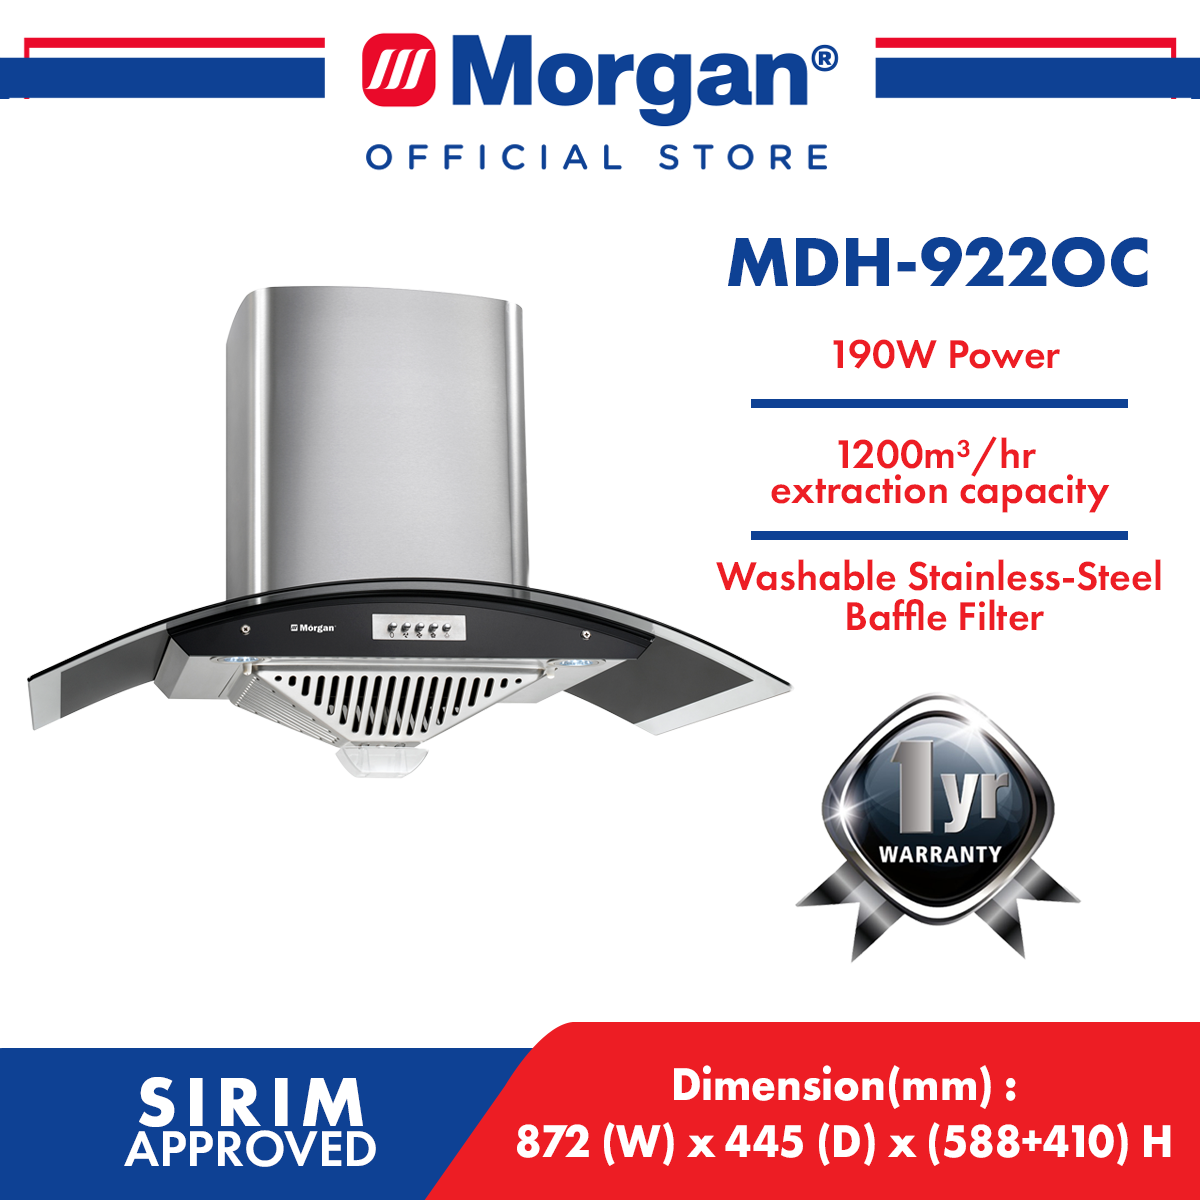 MORGAN MDH-922OC DESIGNER HOOD 900MM/1300M3